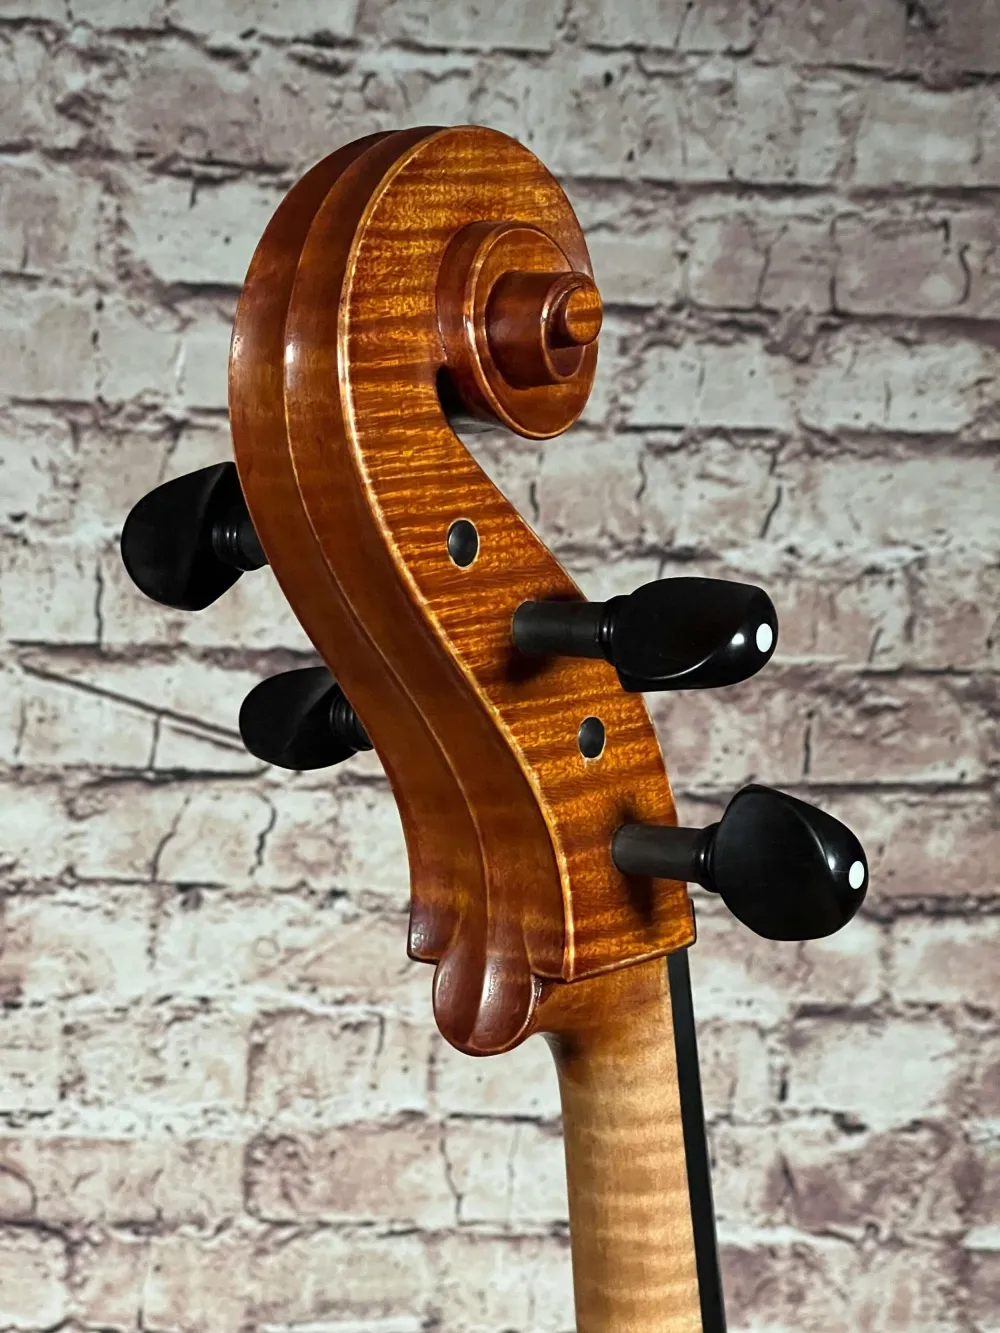 Schnecke-hinten-seitlich-Detailansicht eines Harsan Mihai nach Francesco Ruggeri Cello (Violoncello) Handarbeit 2018